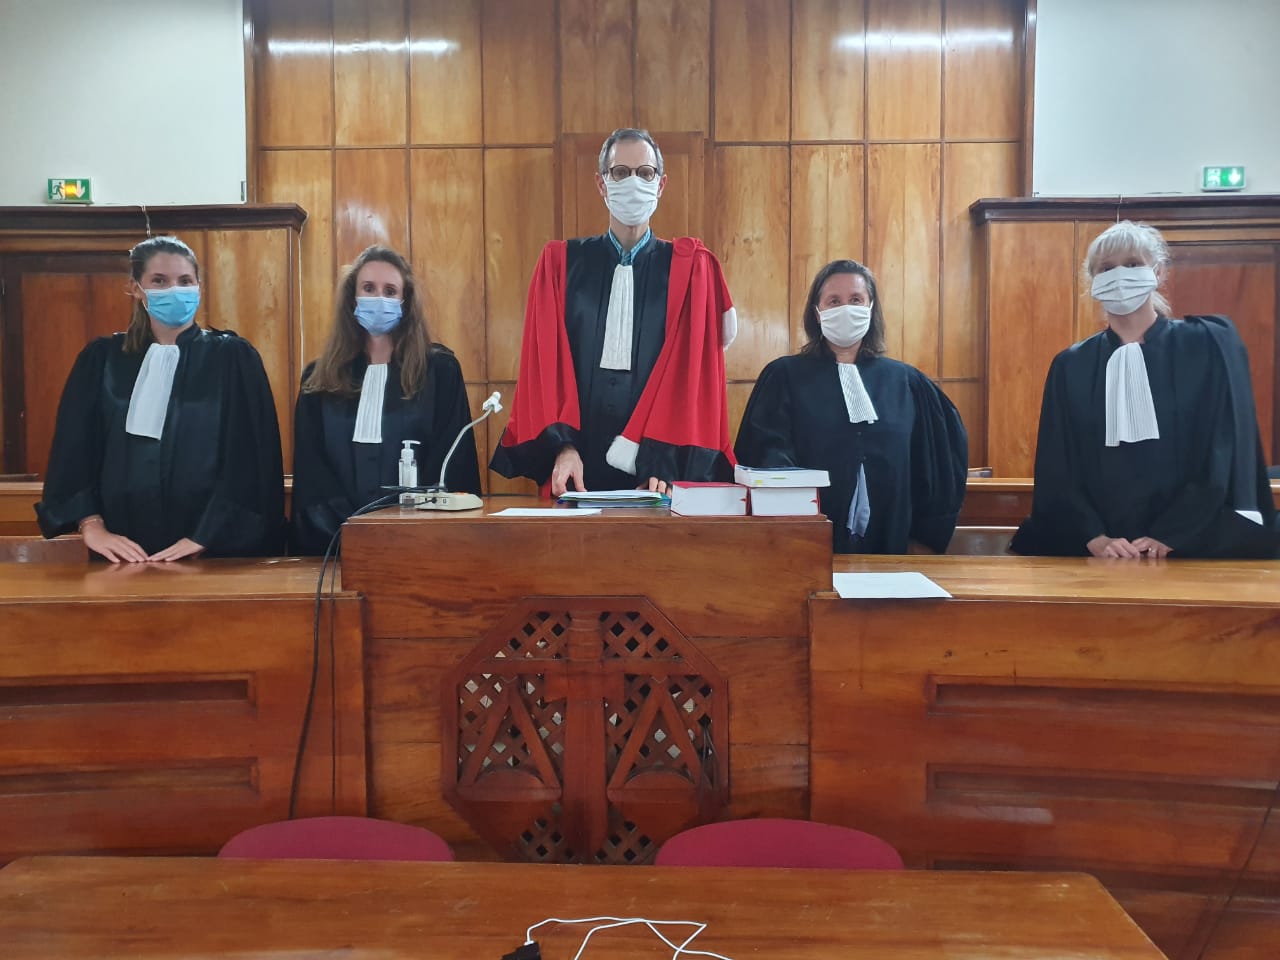     Premier procès de la Cour Criminelle de Guadeloupe 

